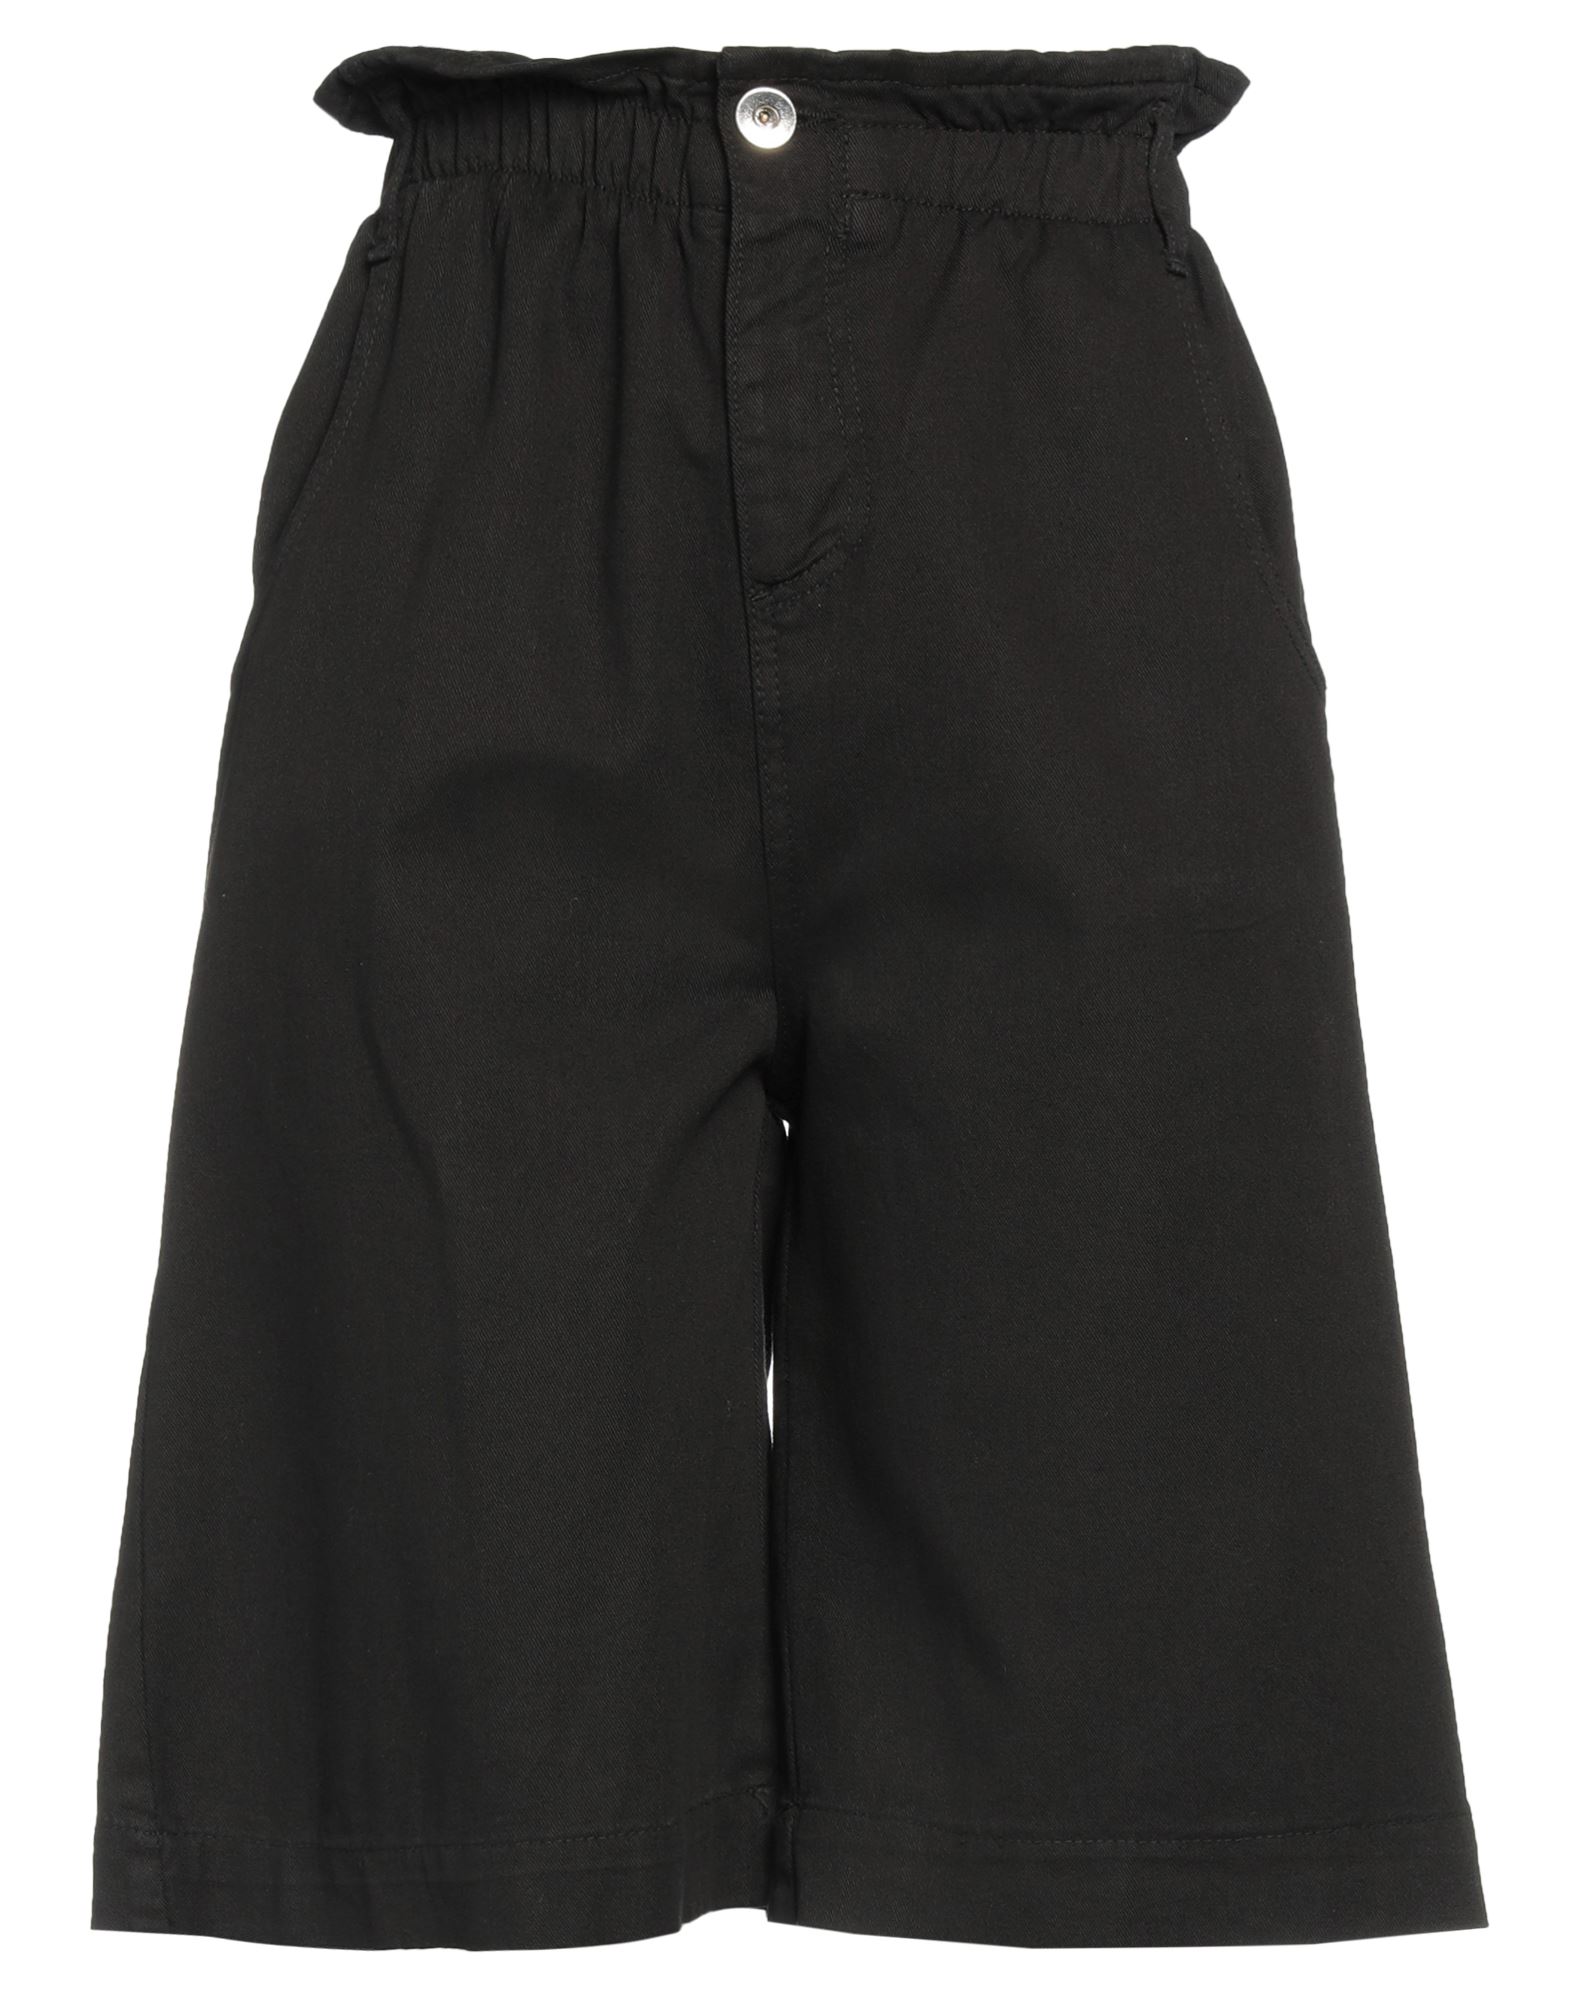 Brand Unique Woman Shorts & Bermuda Shorts Black Size 0 Cotton